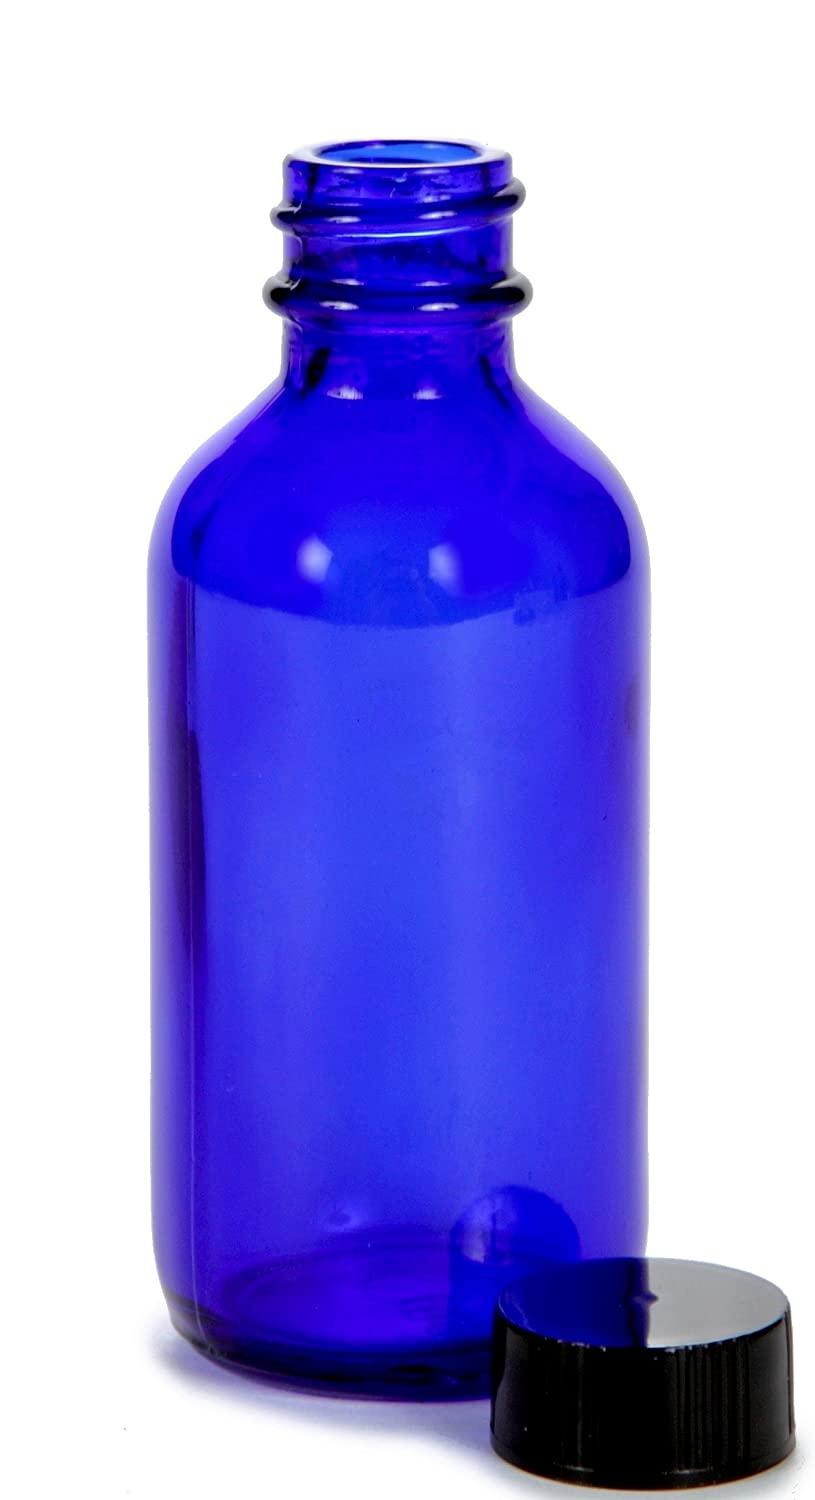 Vivaplex 12 Clear 2 oz Glass Bottles with Lids